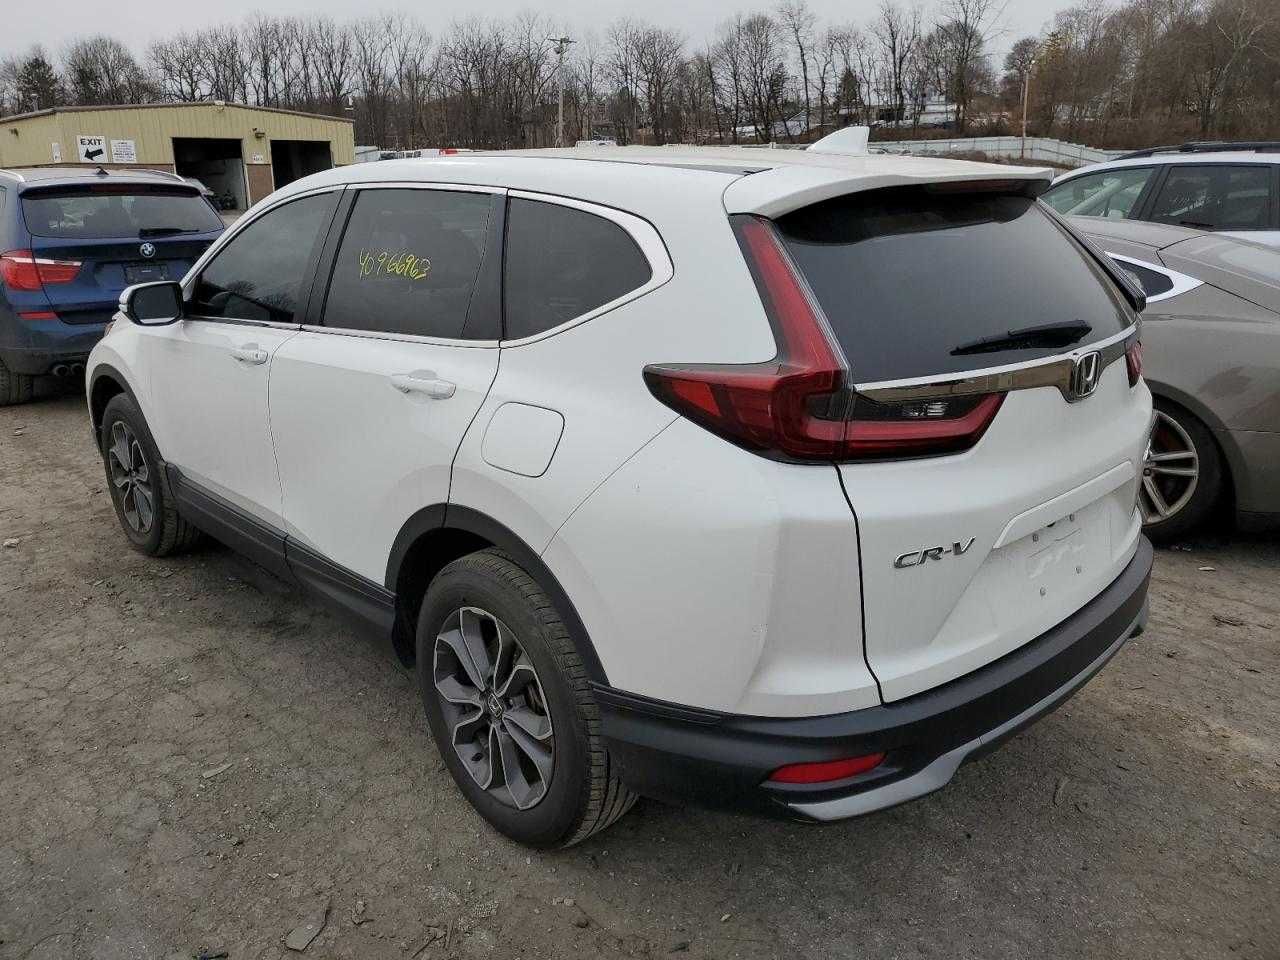 Honda CR-V EXL 2020